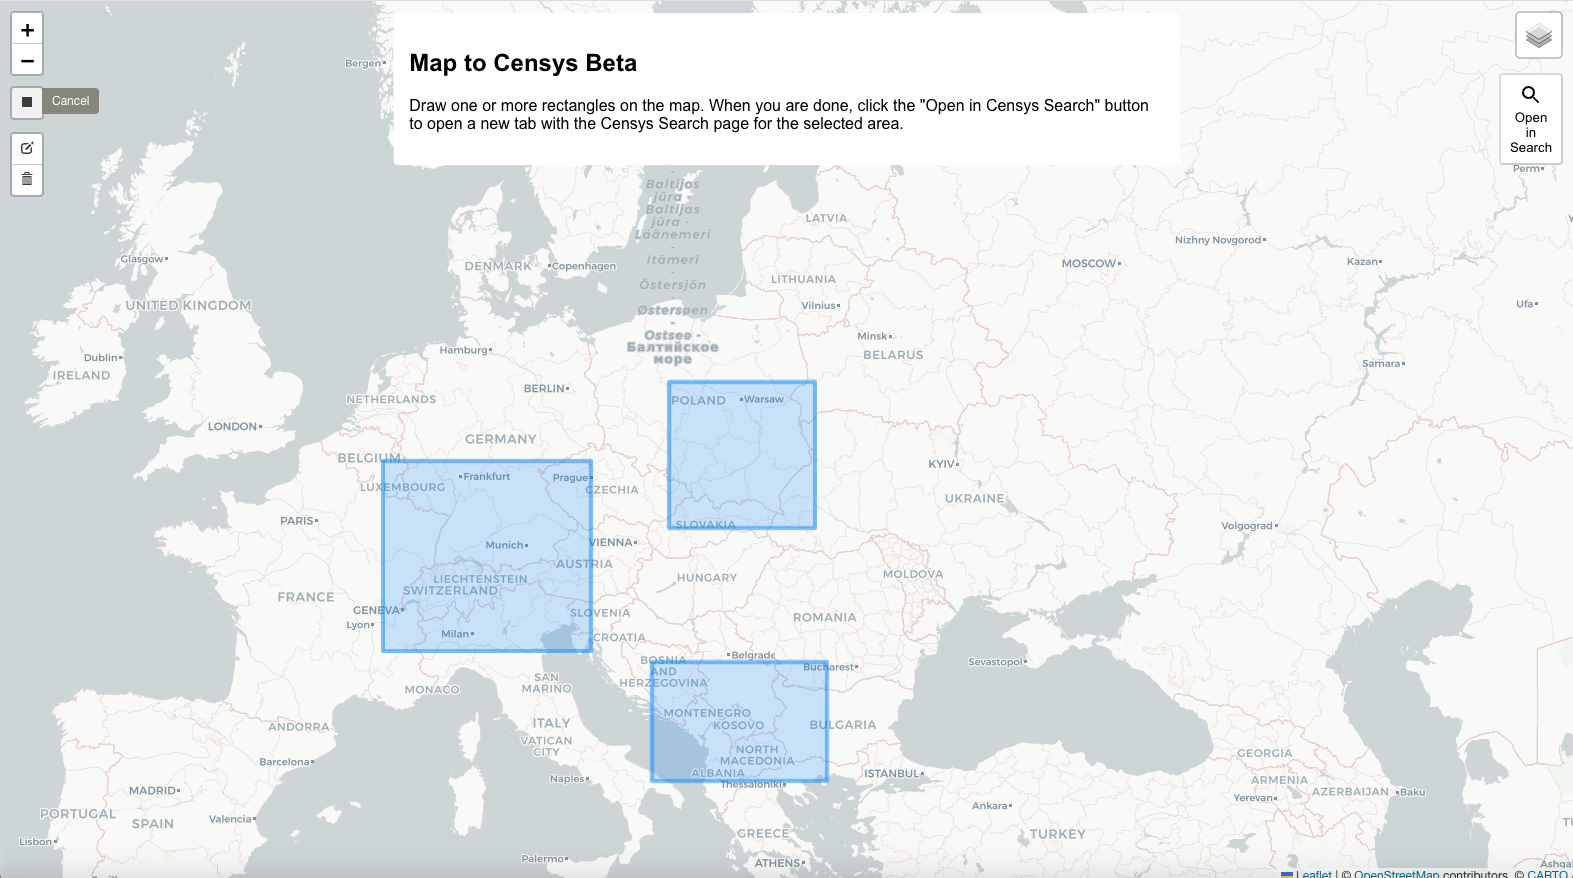 Karte zu Censys Beta - Mehrere Regionen